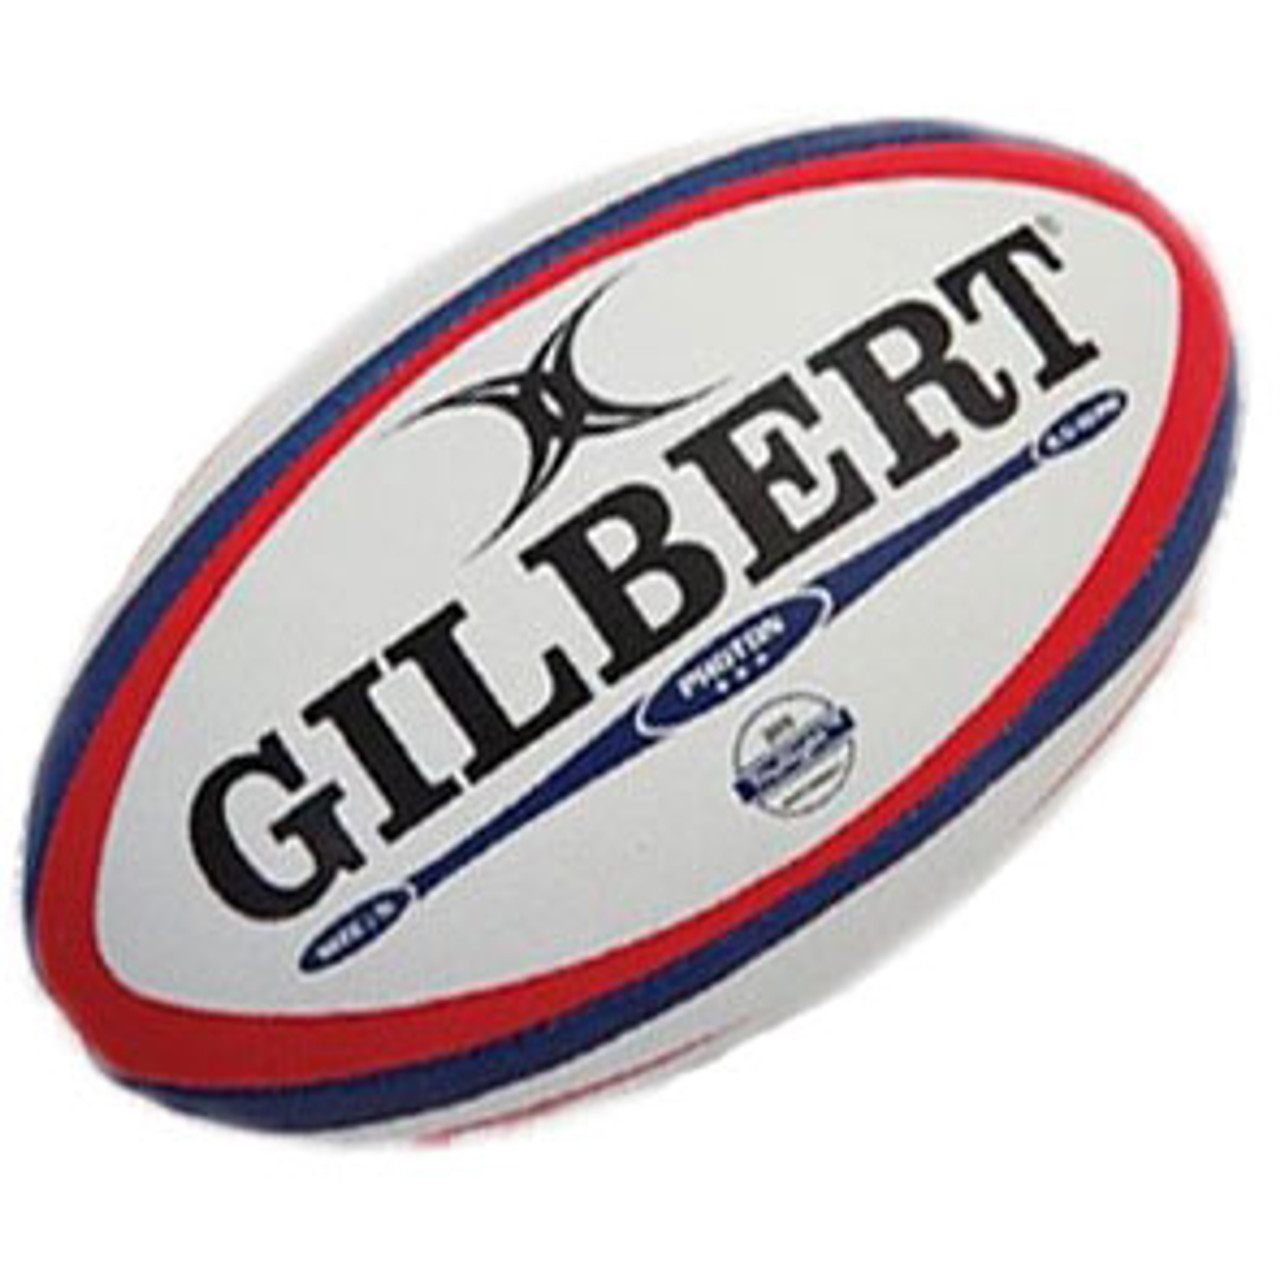 Shop Gilbert Photon Size 5 Match Rugby Ball Online | Marchants.com